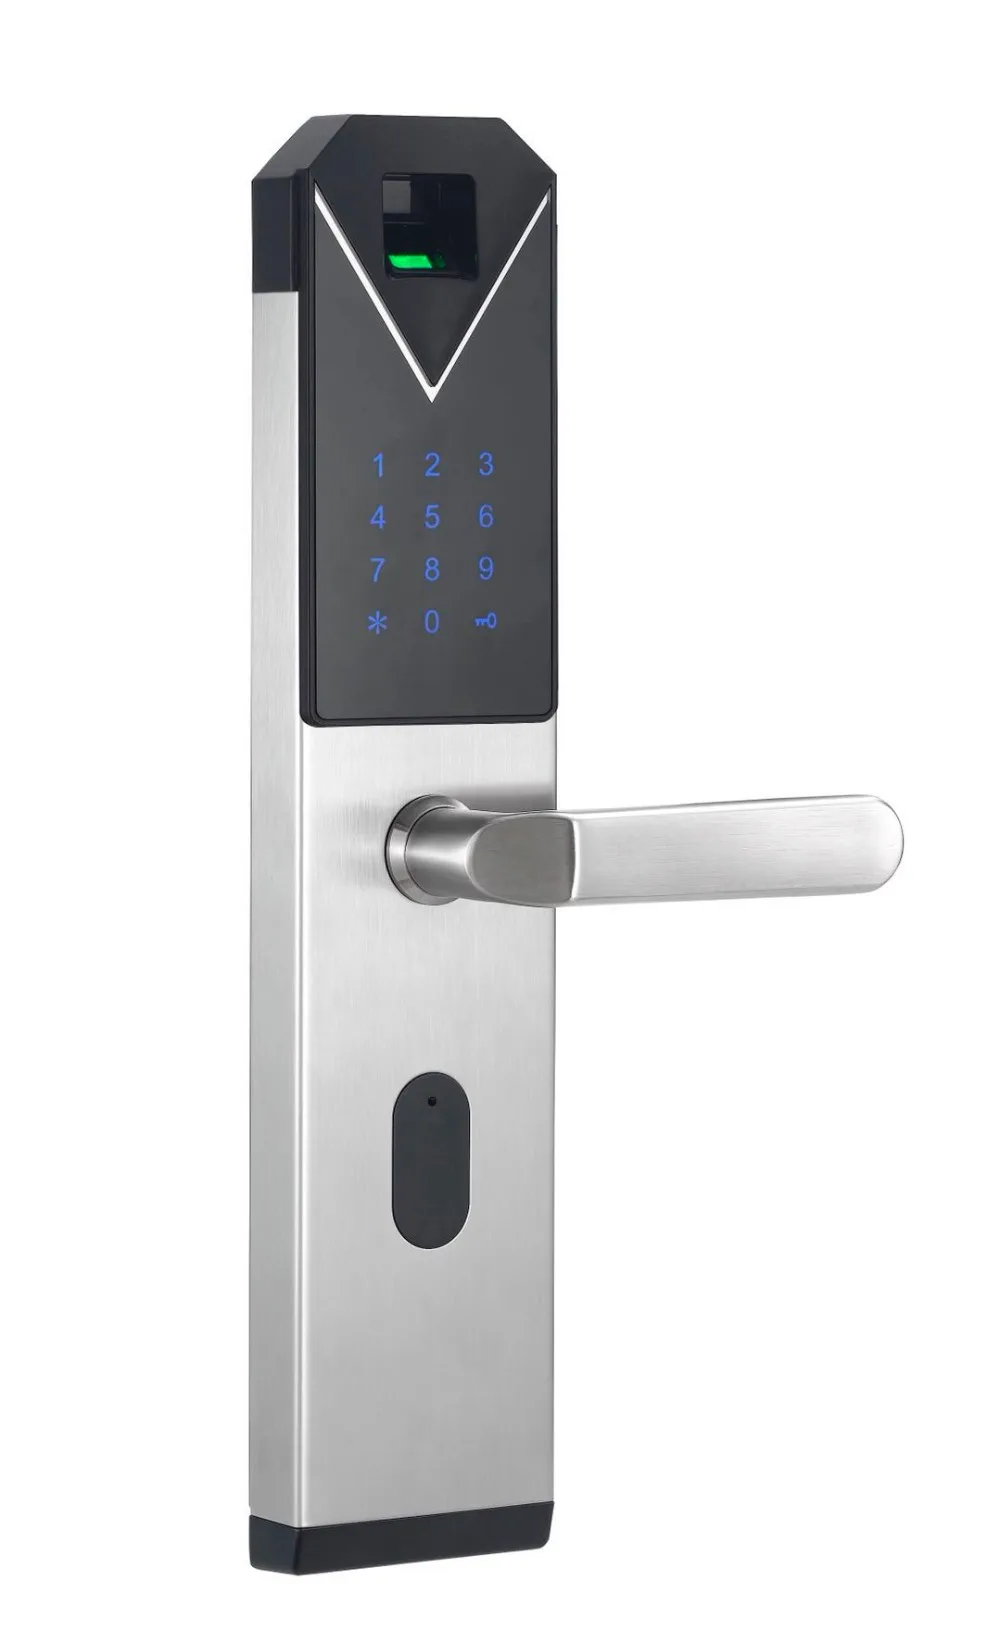 Yobang безопасности Умный Замок с Биометрическим распознаванием Smart Keyless замок отпечатков пальцев+ Пароль RFID карты ключ разблокировки 4 способа